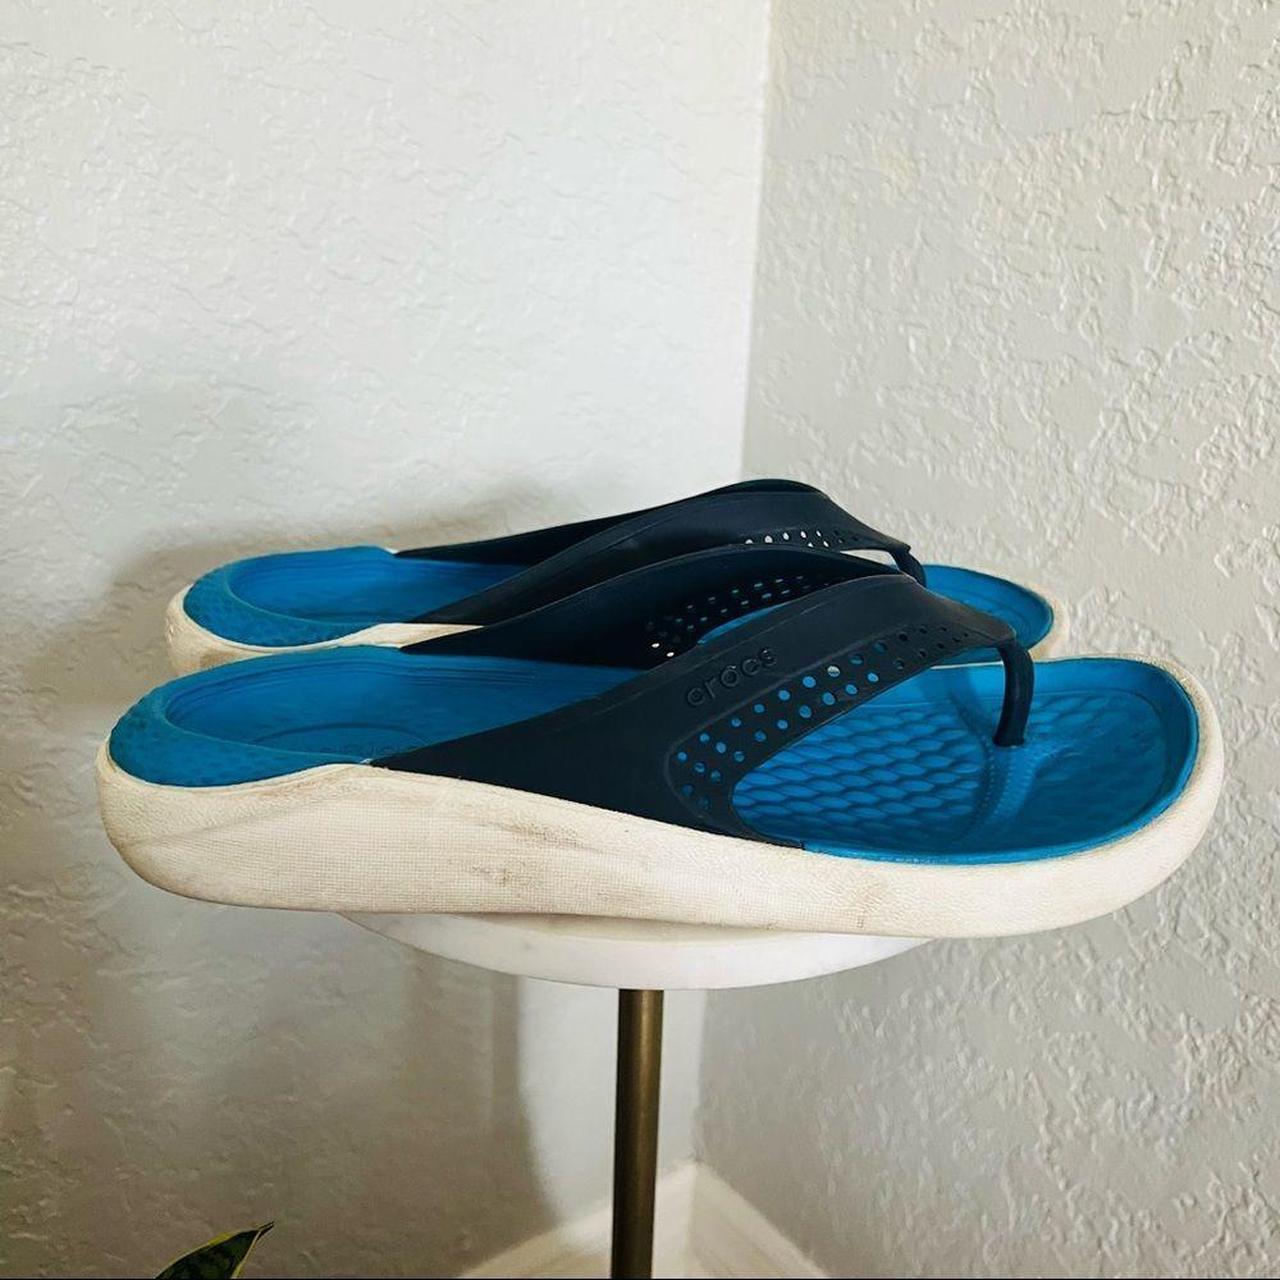 Product Image 3 - Crocs Men’s Flip Flops
Size: 9
Color: